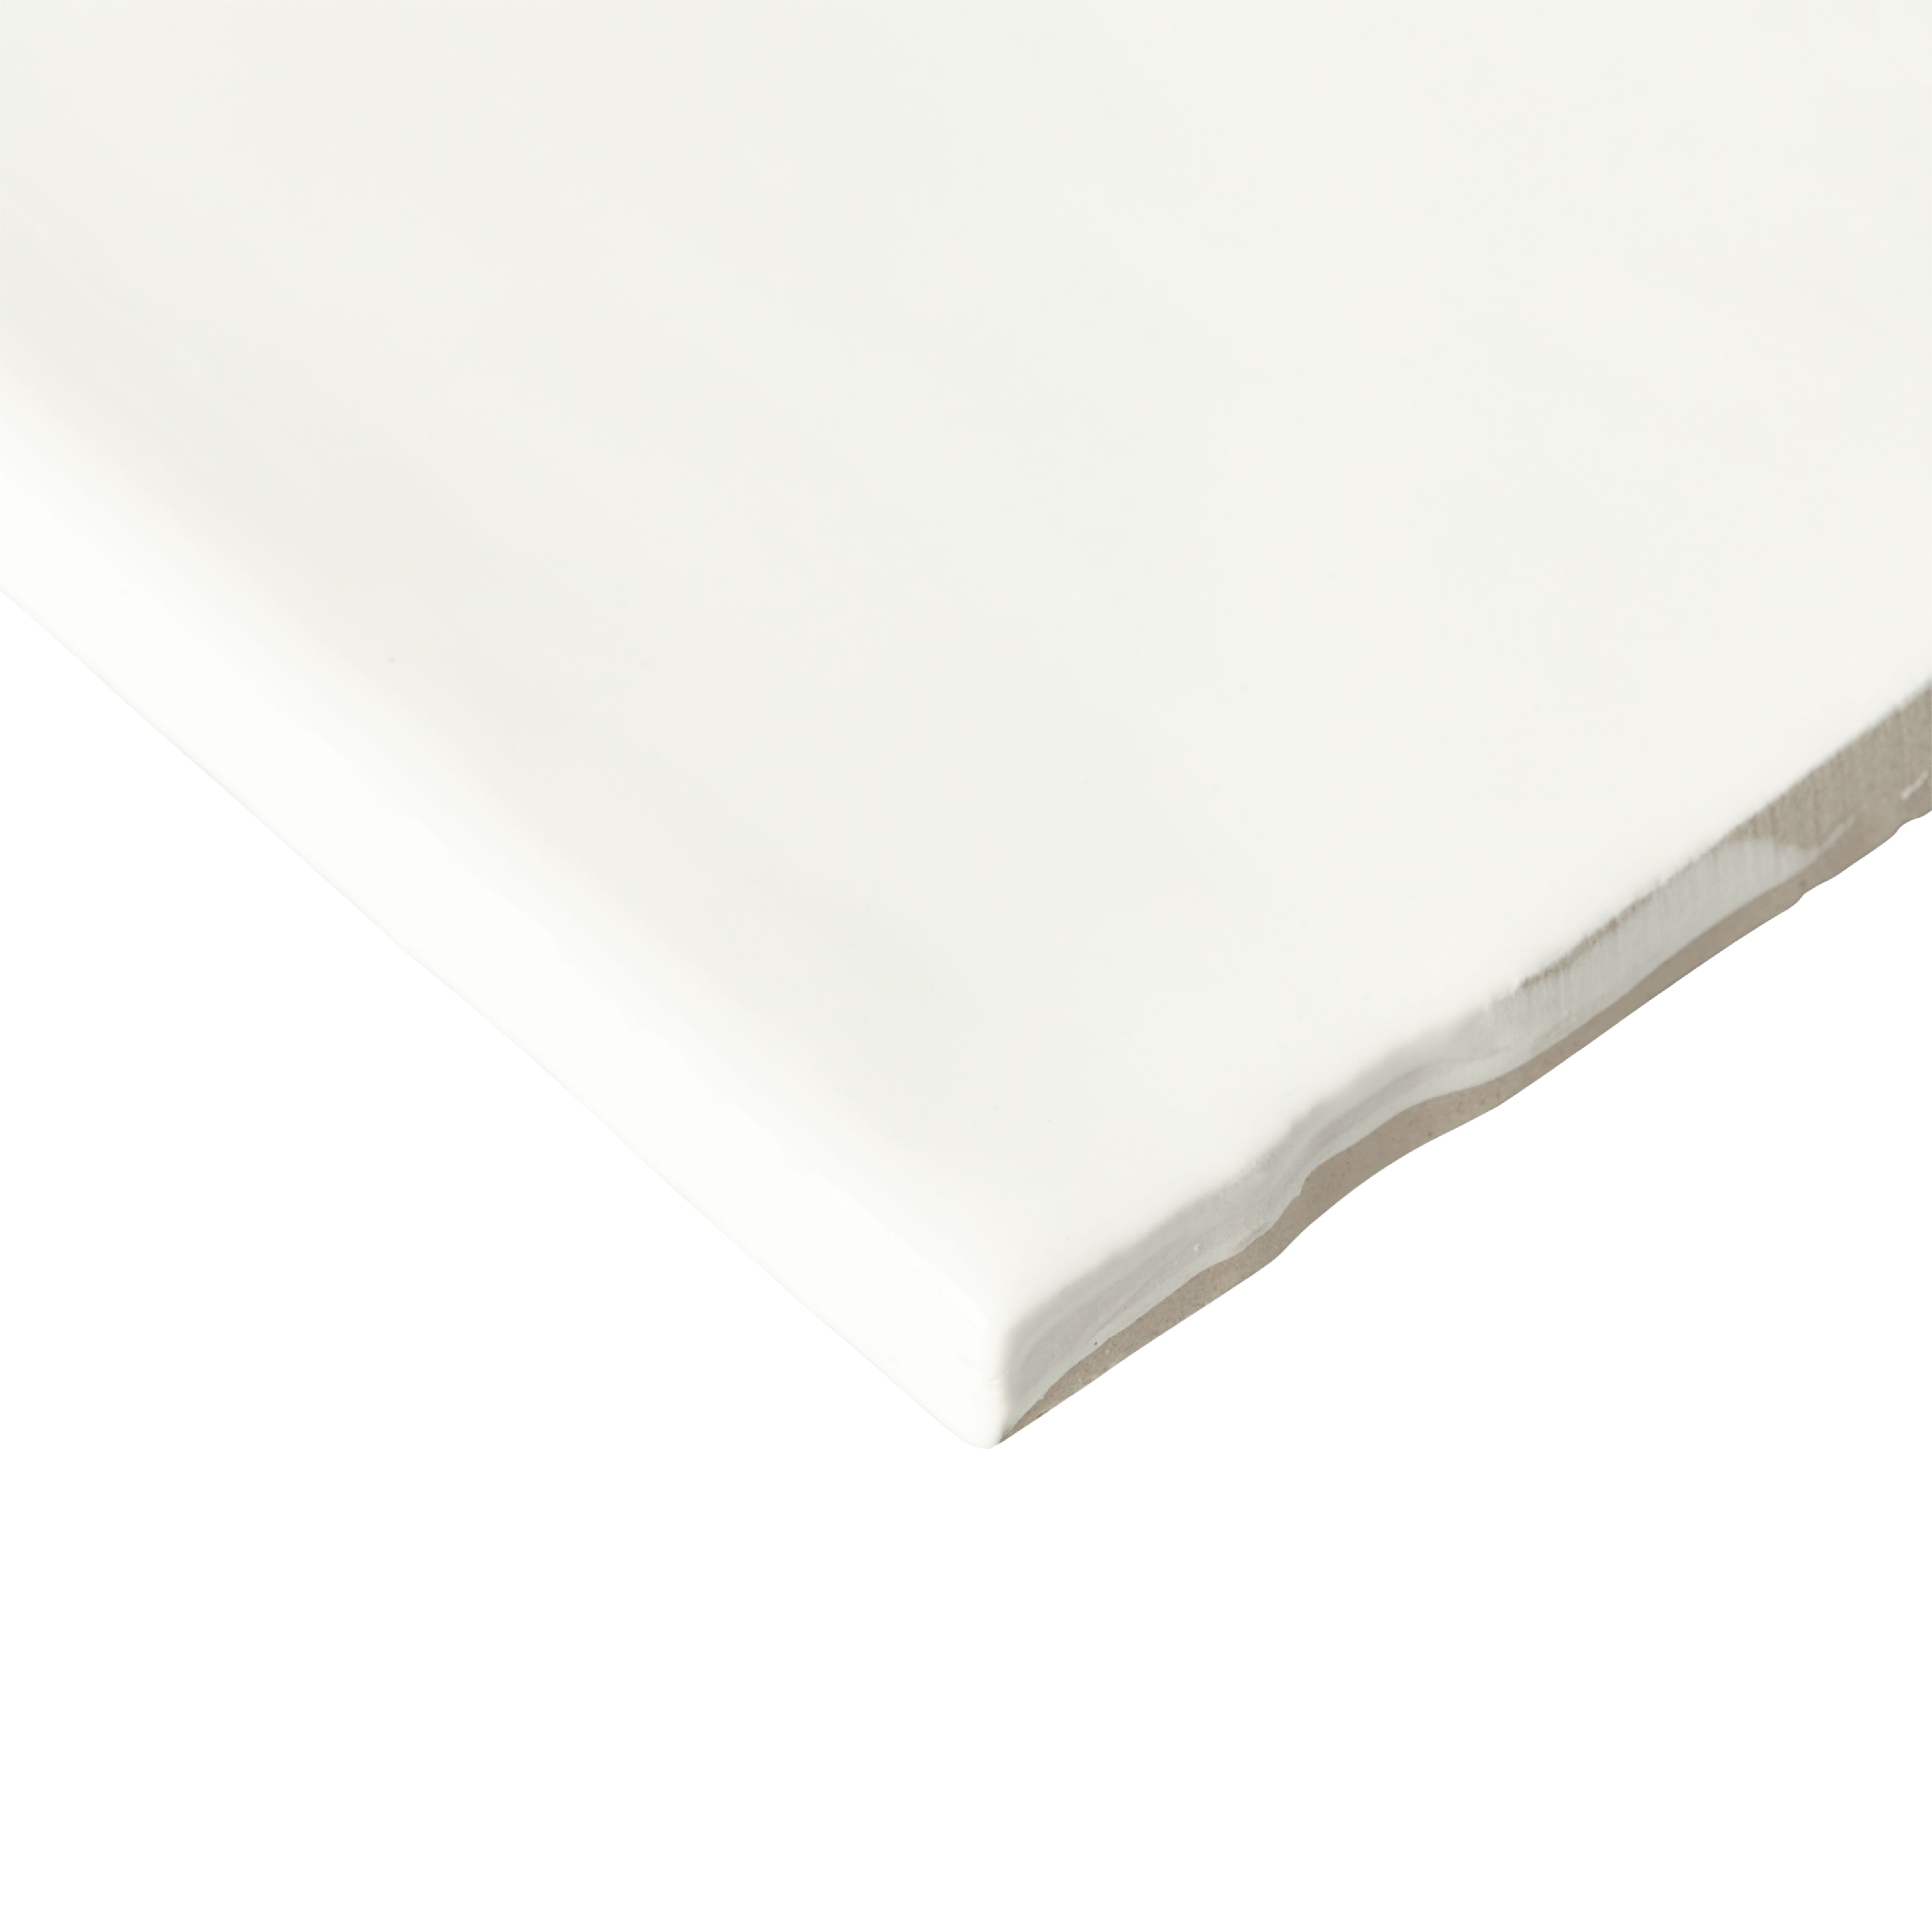 Vernisse White Gloss Plain Ceramic Wall Tile, Pack of 41, (L)301mm (W)75.4mm